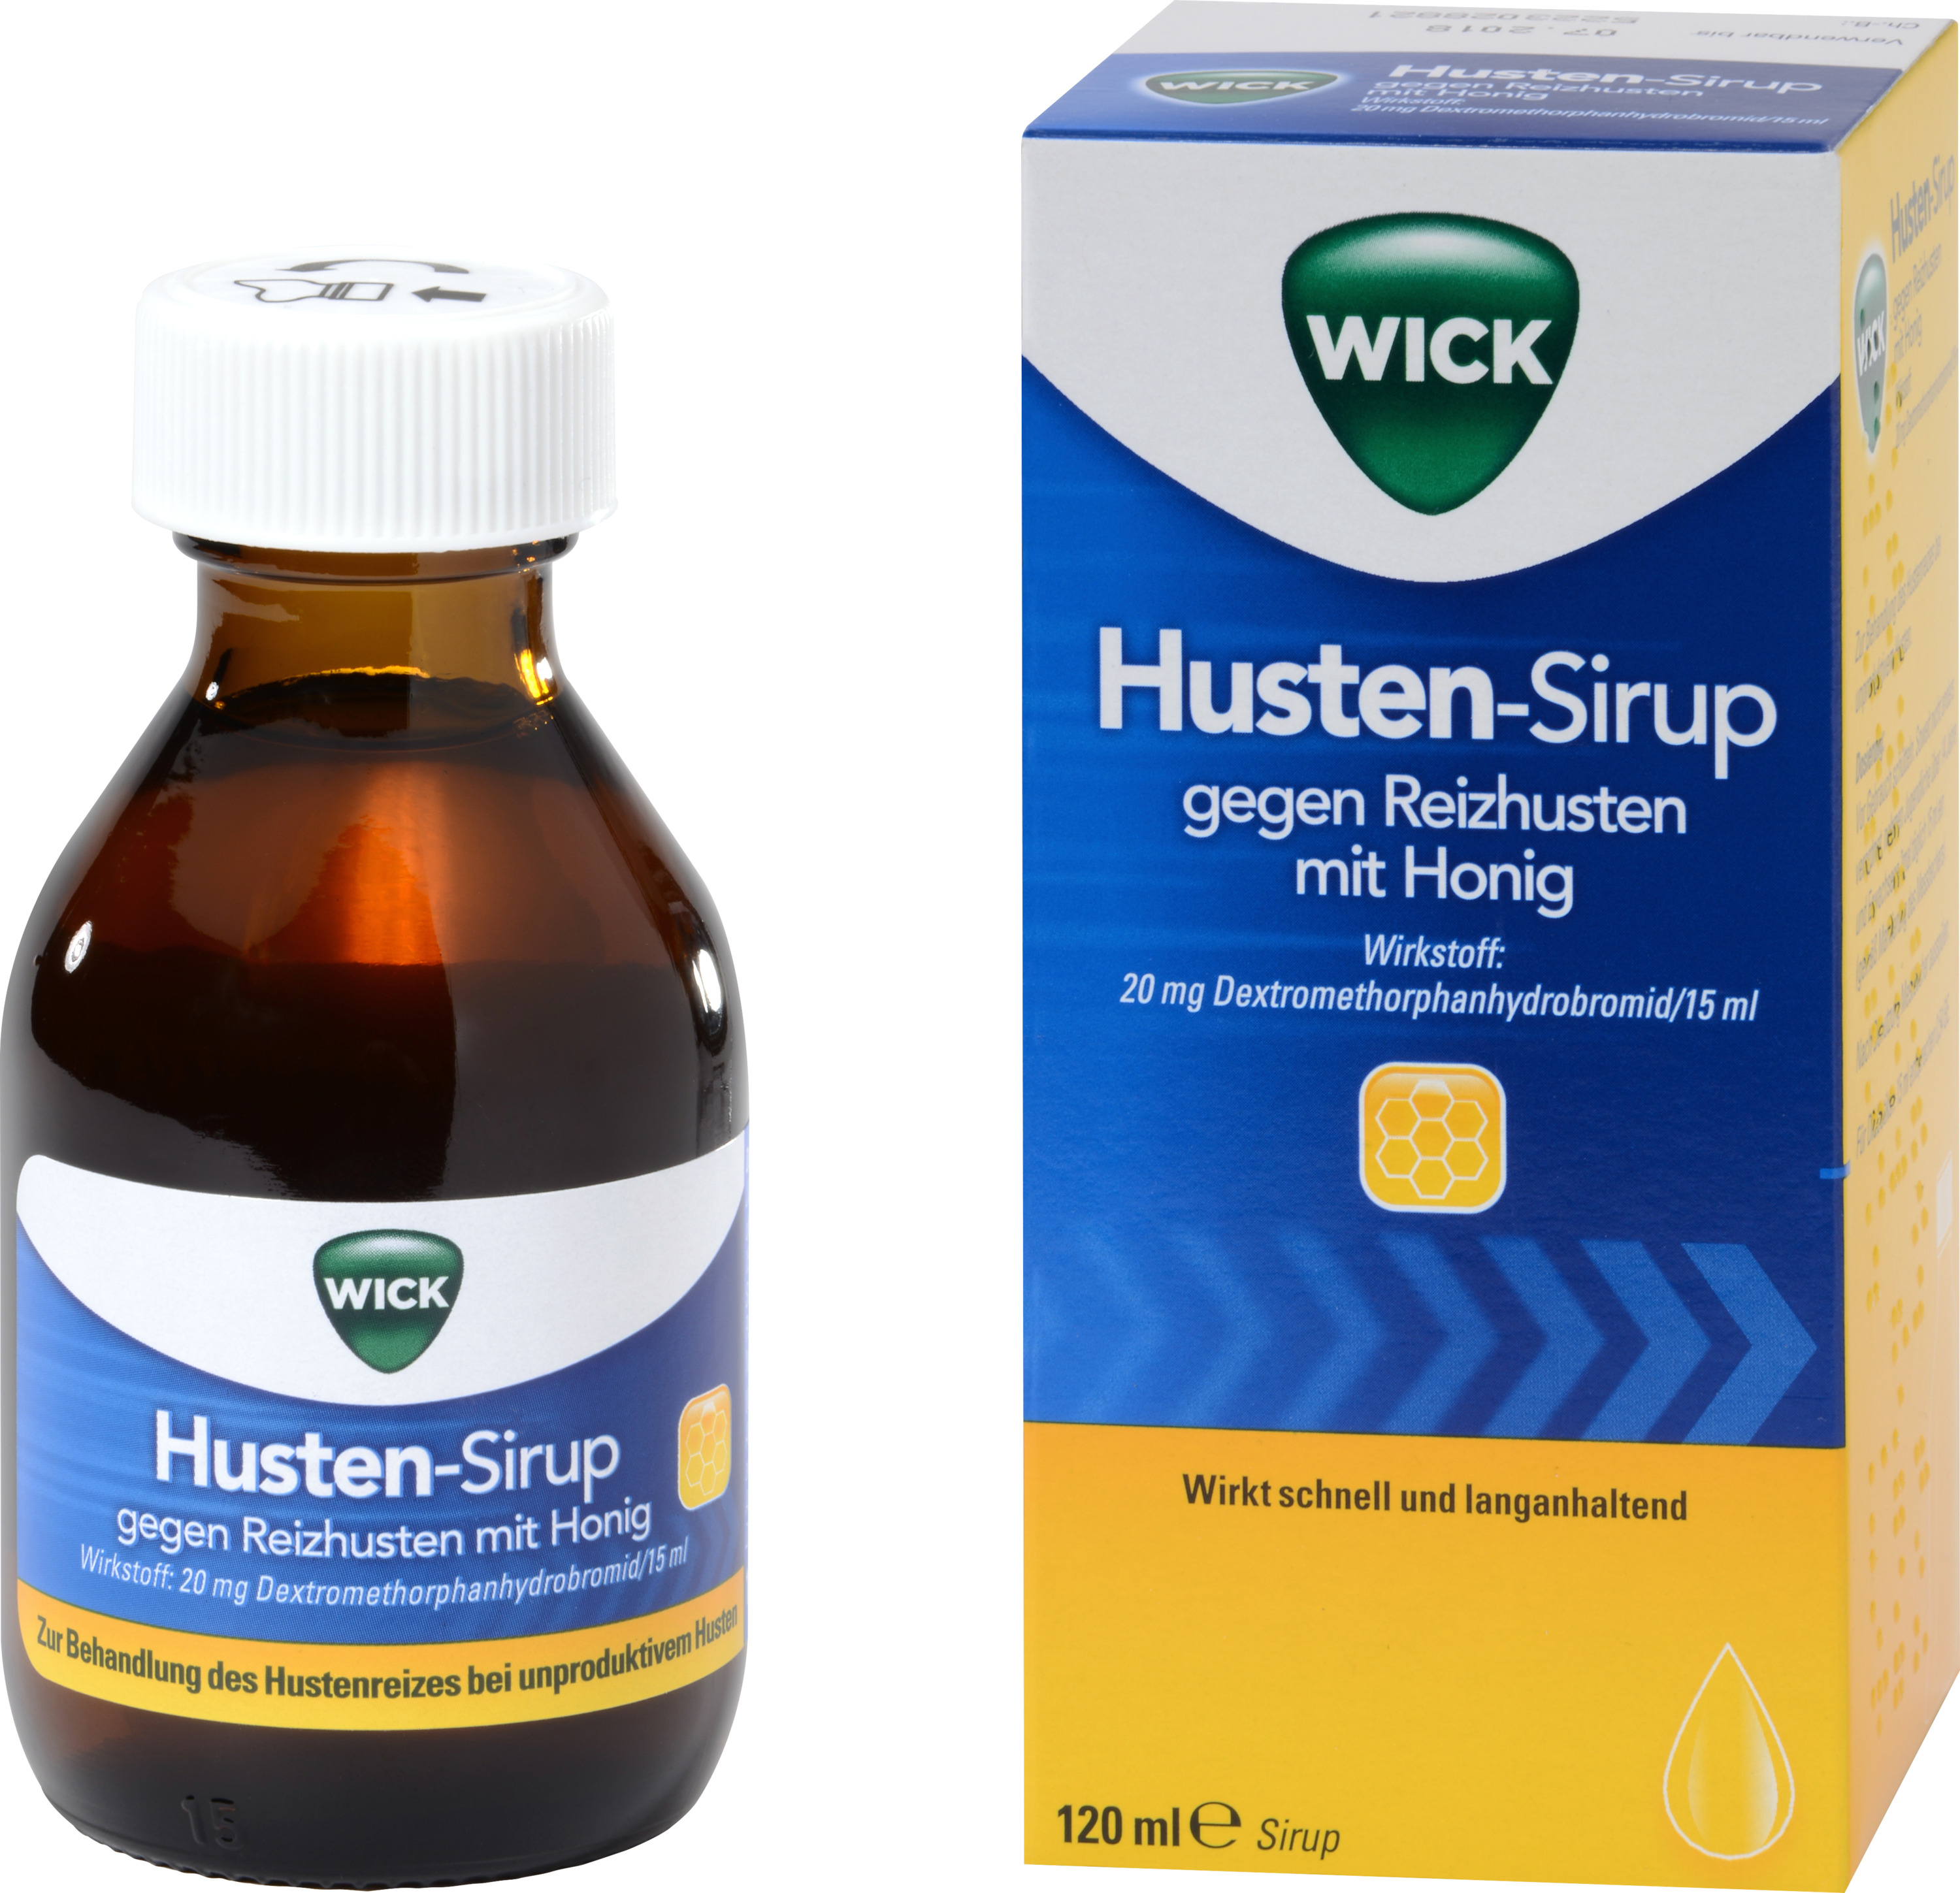 WICK Husten-Sirup mit Honig gegen trockenen Husten